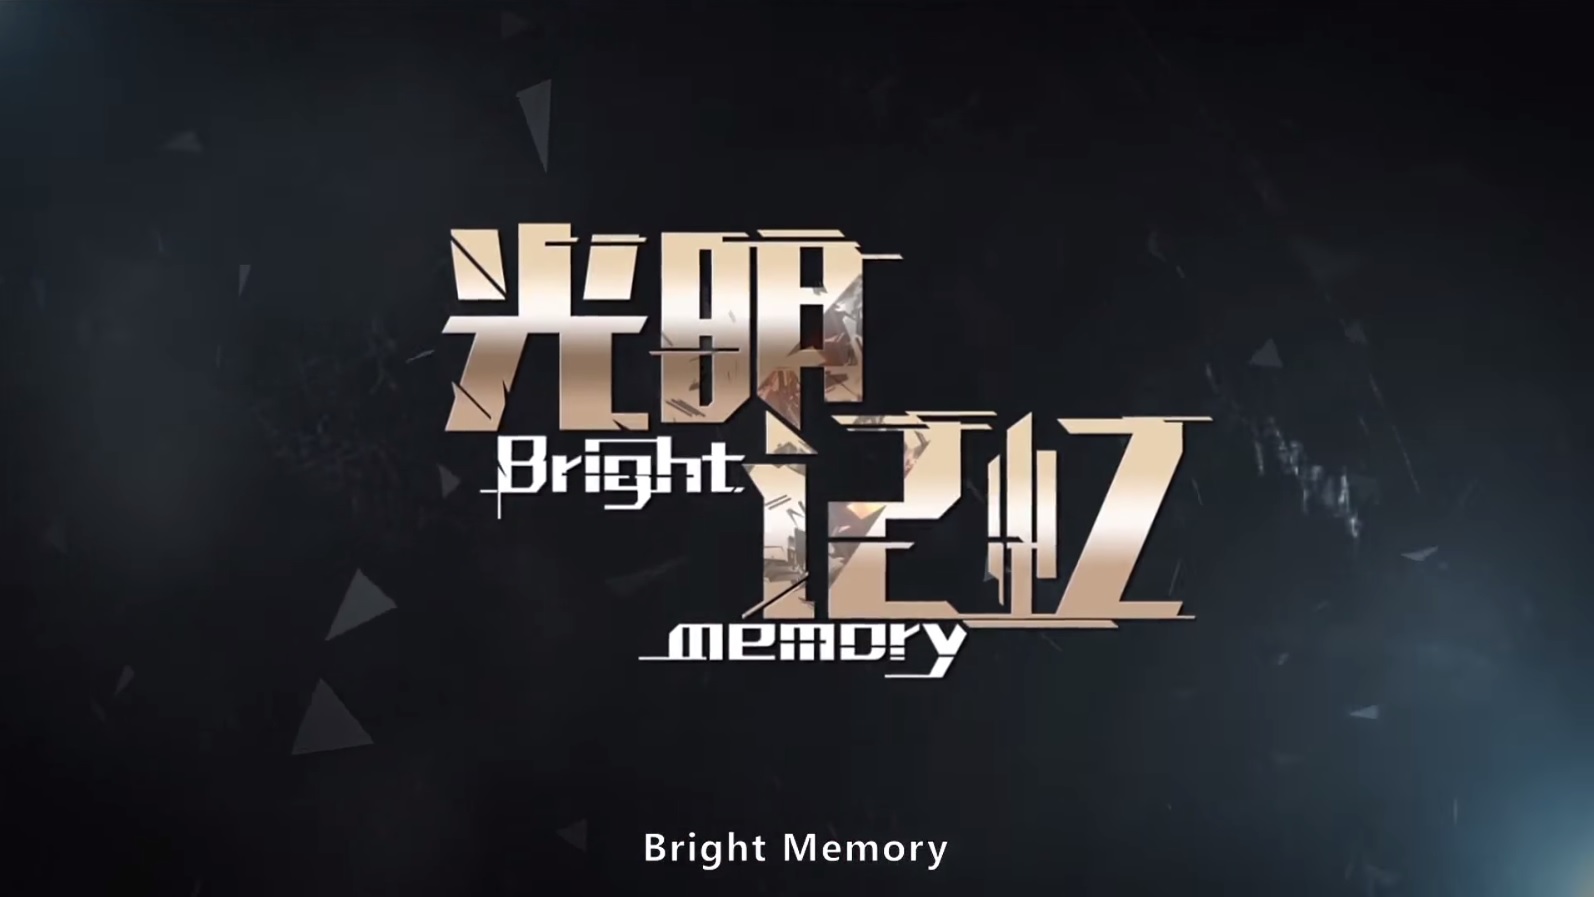 Bright Memory ผลงาน FPS จากแดนมังกร ที่ใช้เอนจิ้น Unreal Engine 4 ในการทำ